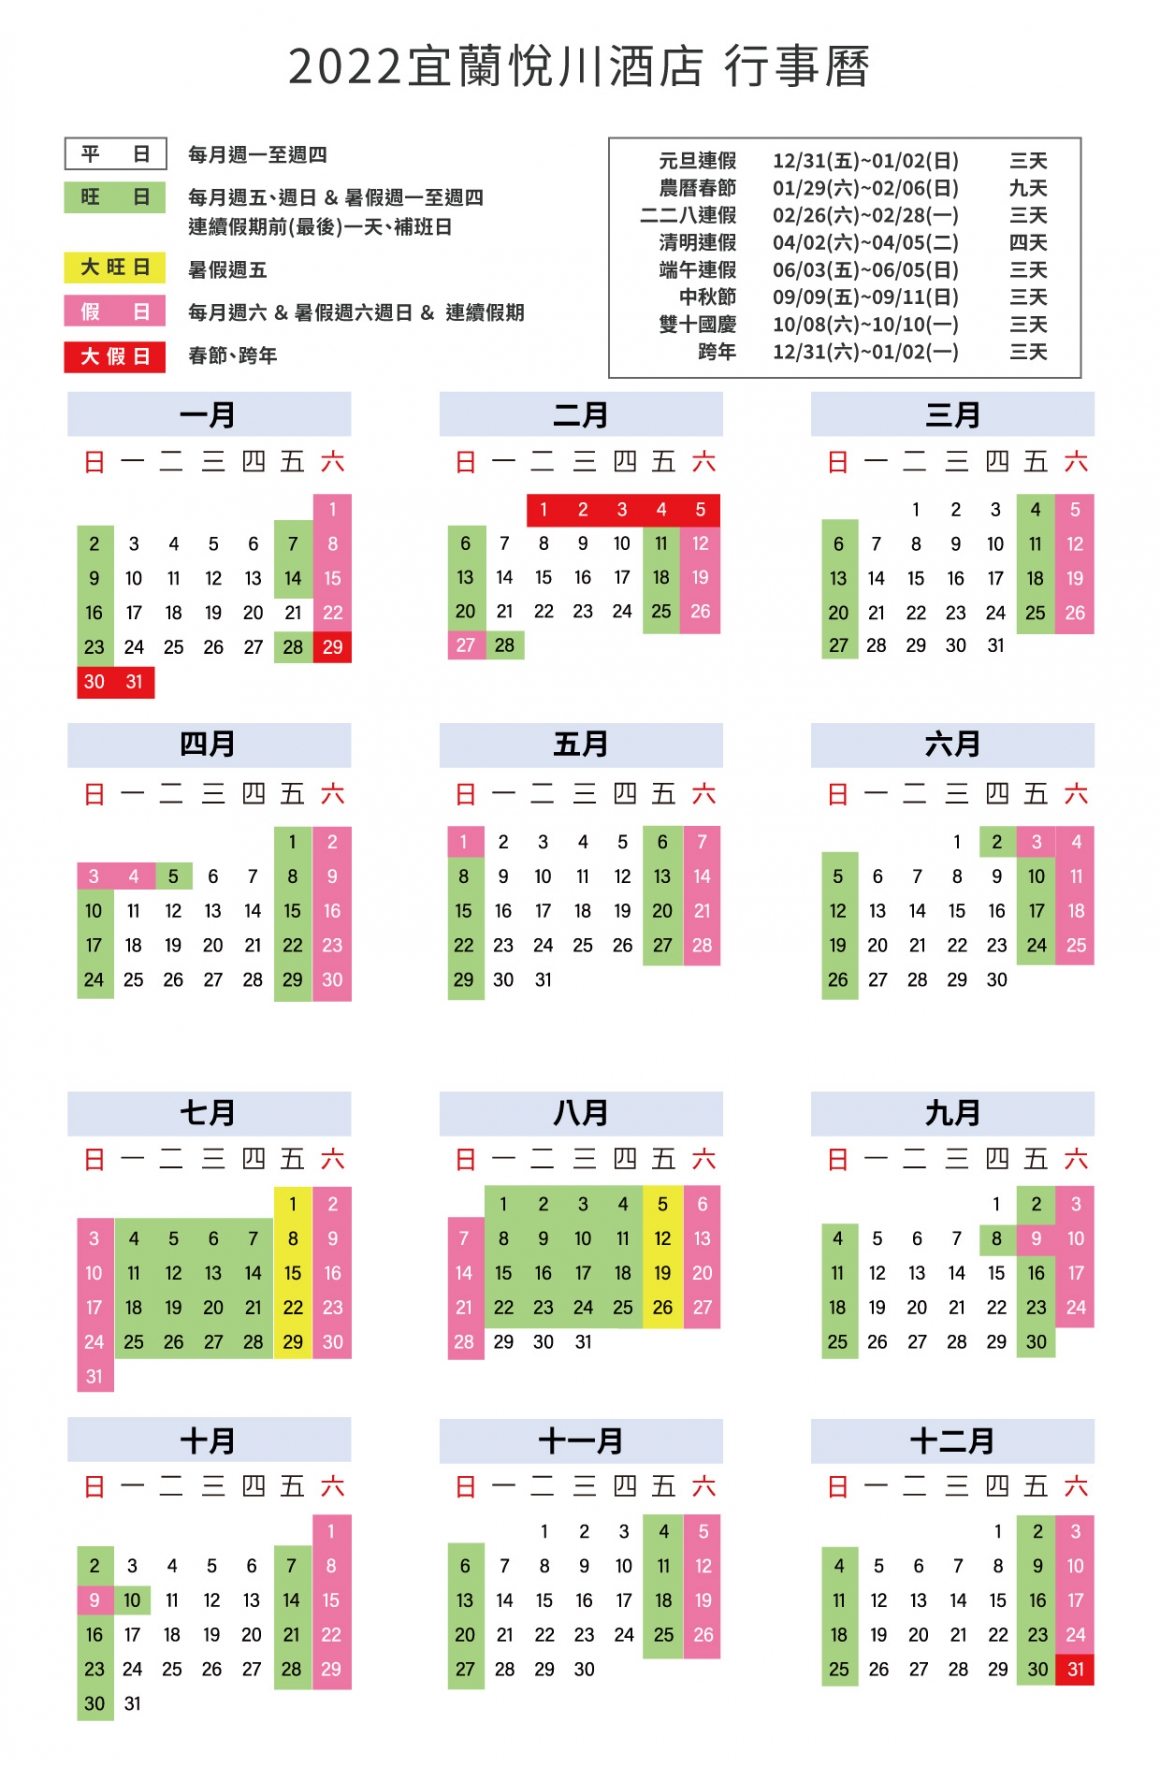 悅川2022年度平旺假日表